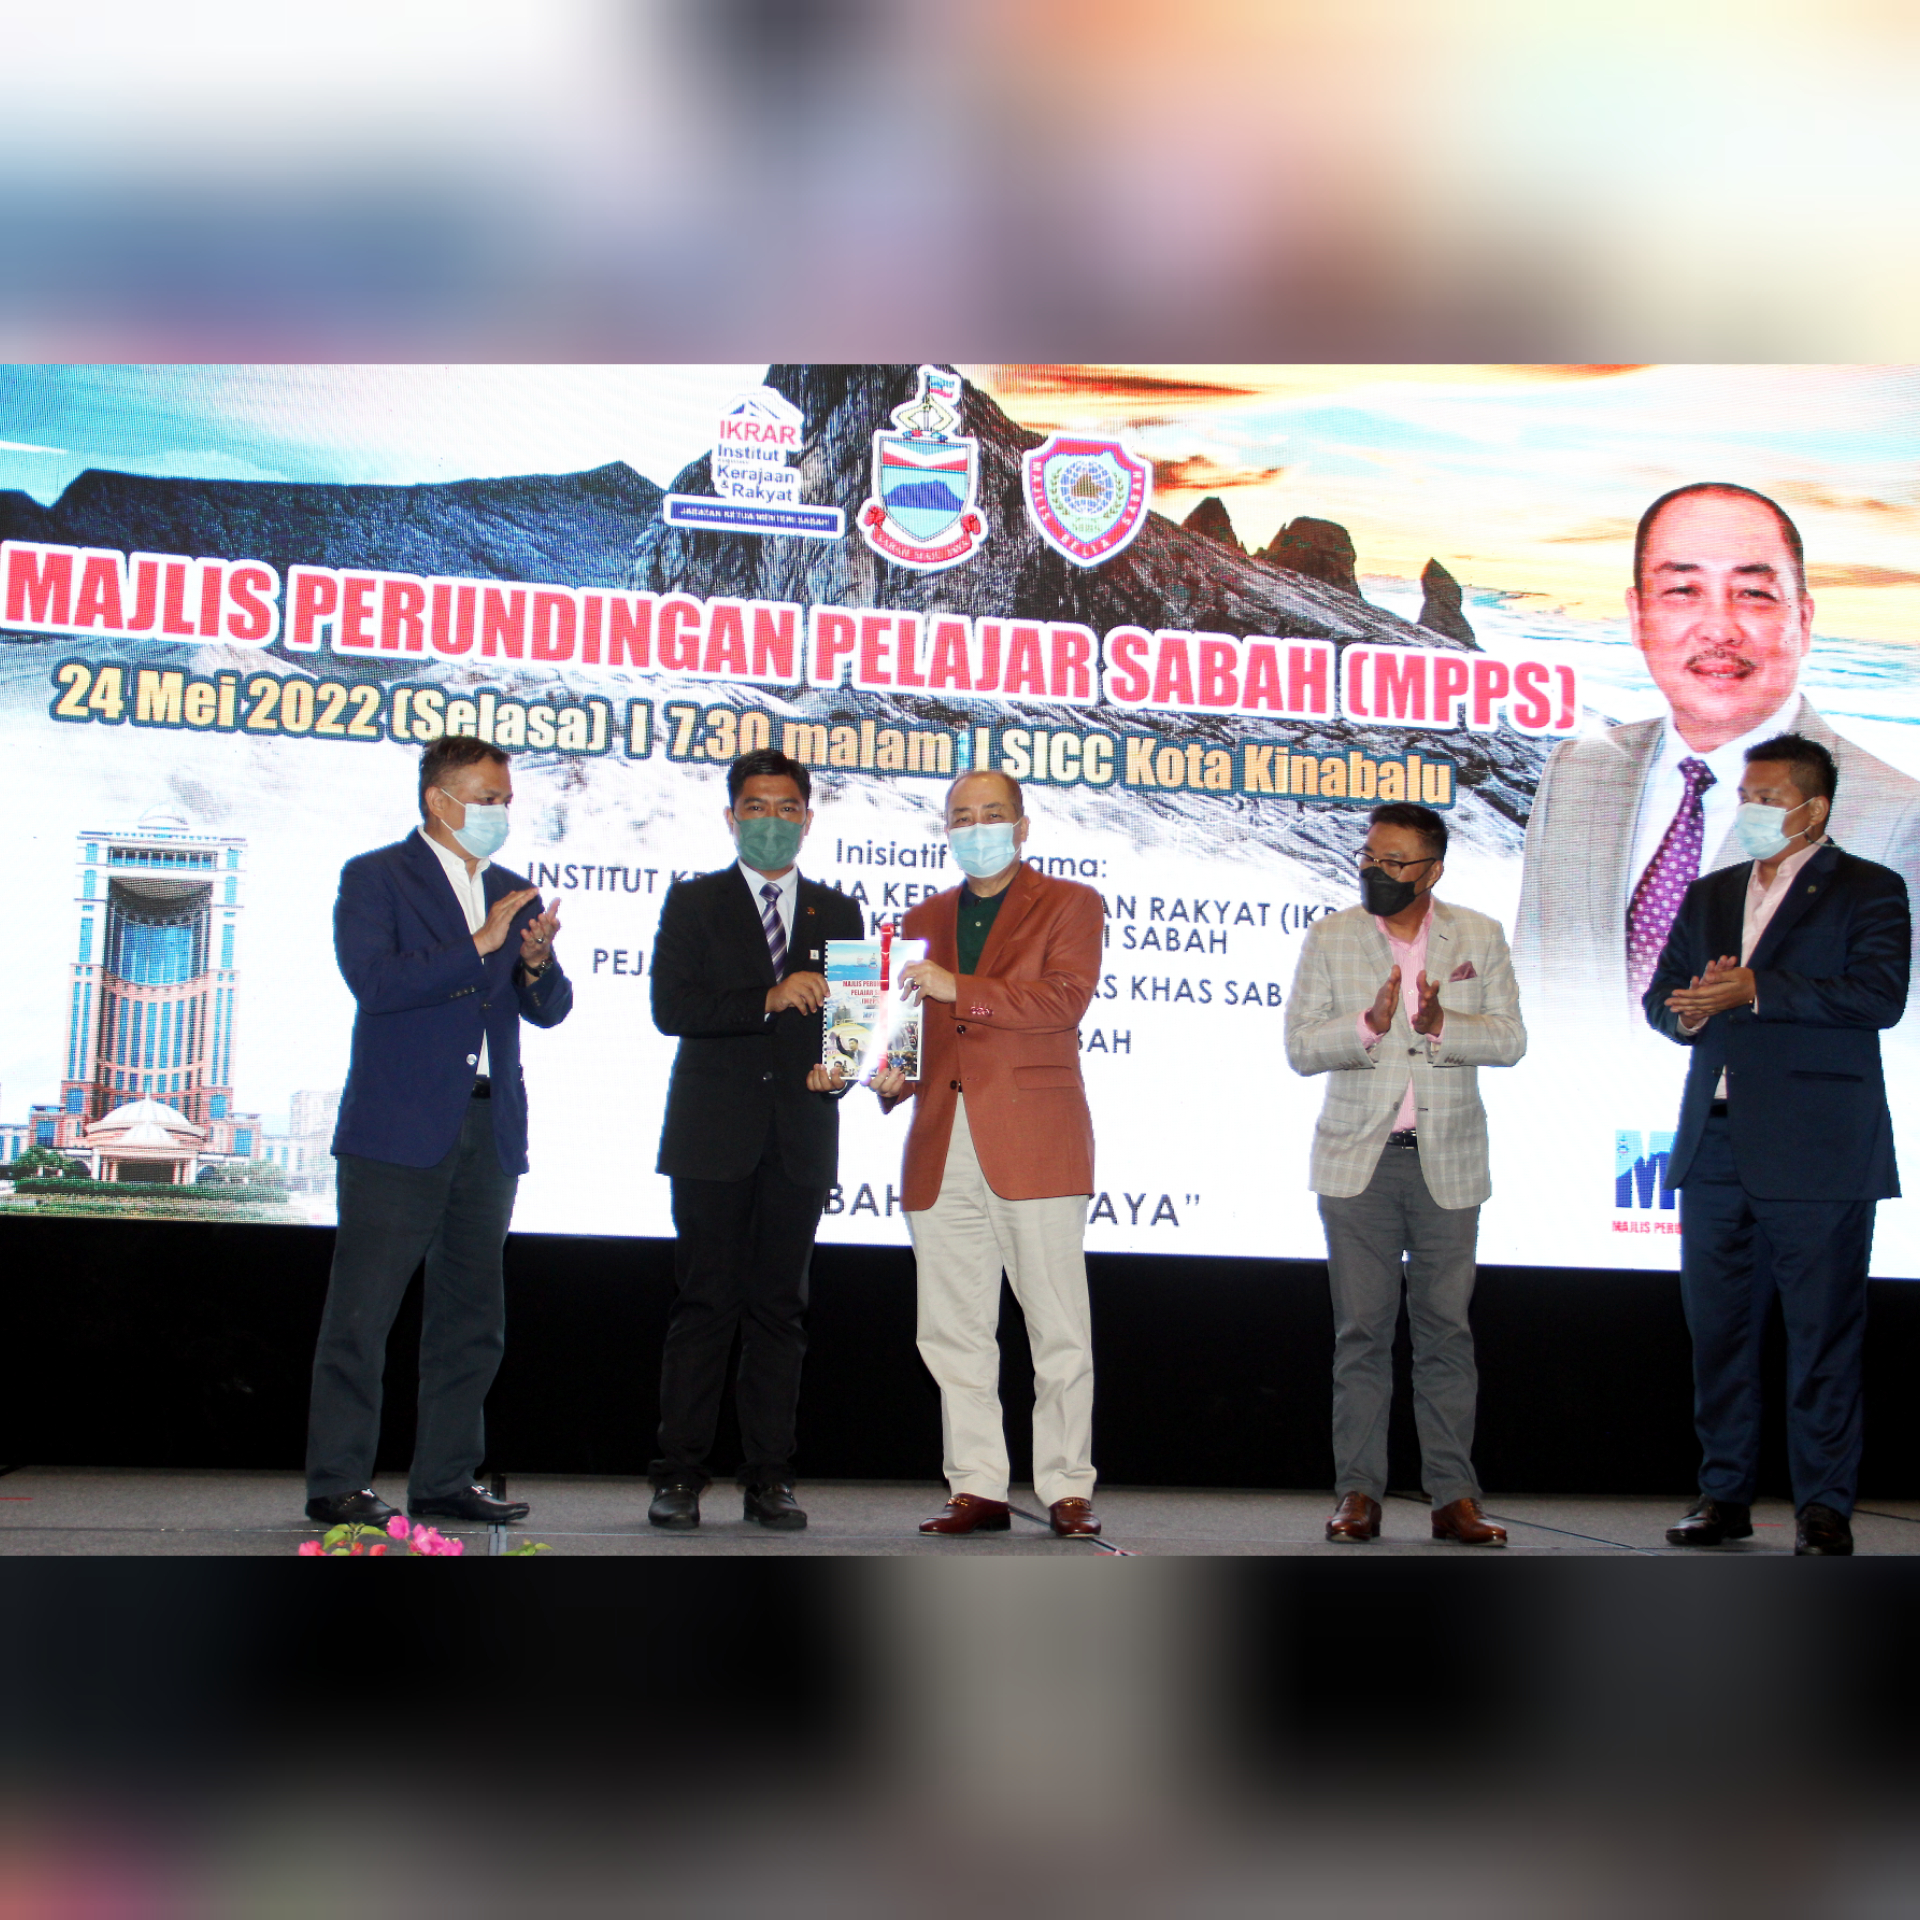 Ketua Menteri, Datuk Seri Hajiji Noor menerima Buku Usul MPPS daripada Pengarah IKRAR, Azrul Ibrahim (dua kiri) selepas merasmikan Majlis Perundingan Pelajar Sabah (MPPS) di Sabah International Convention Centre (SICC) di sini, malam tadi.